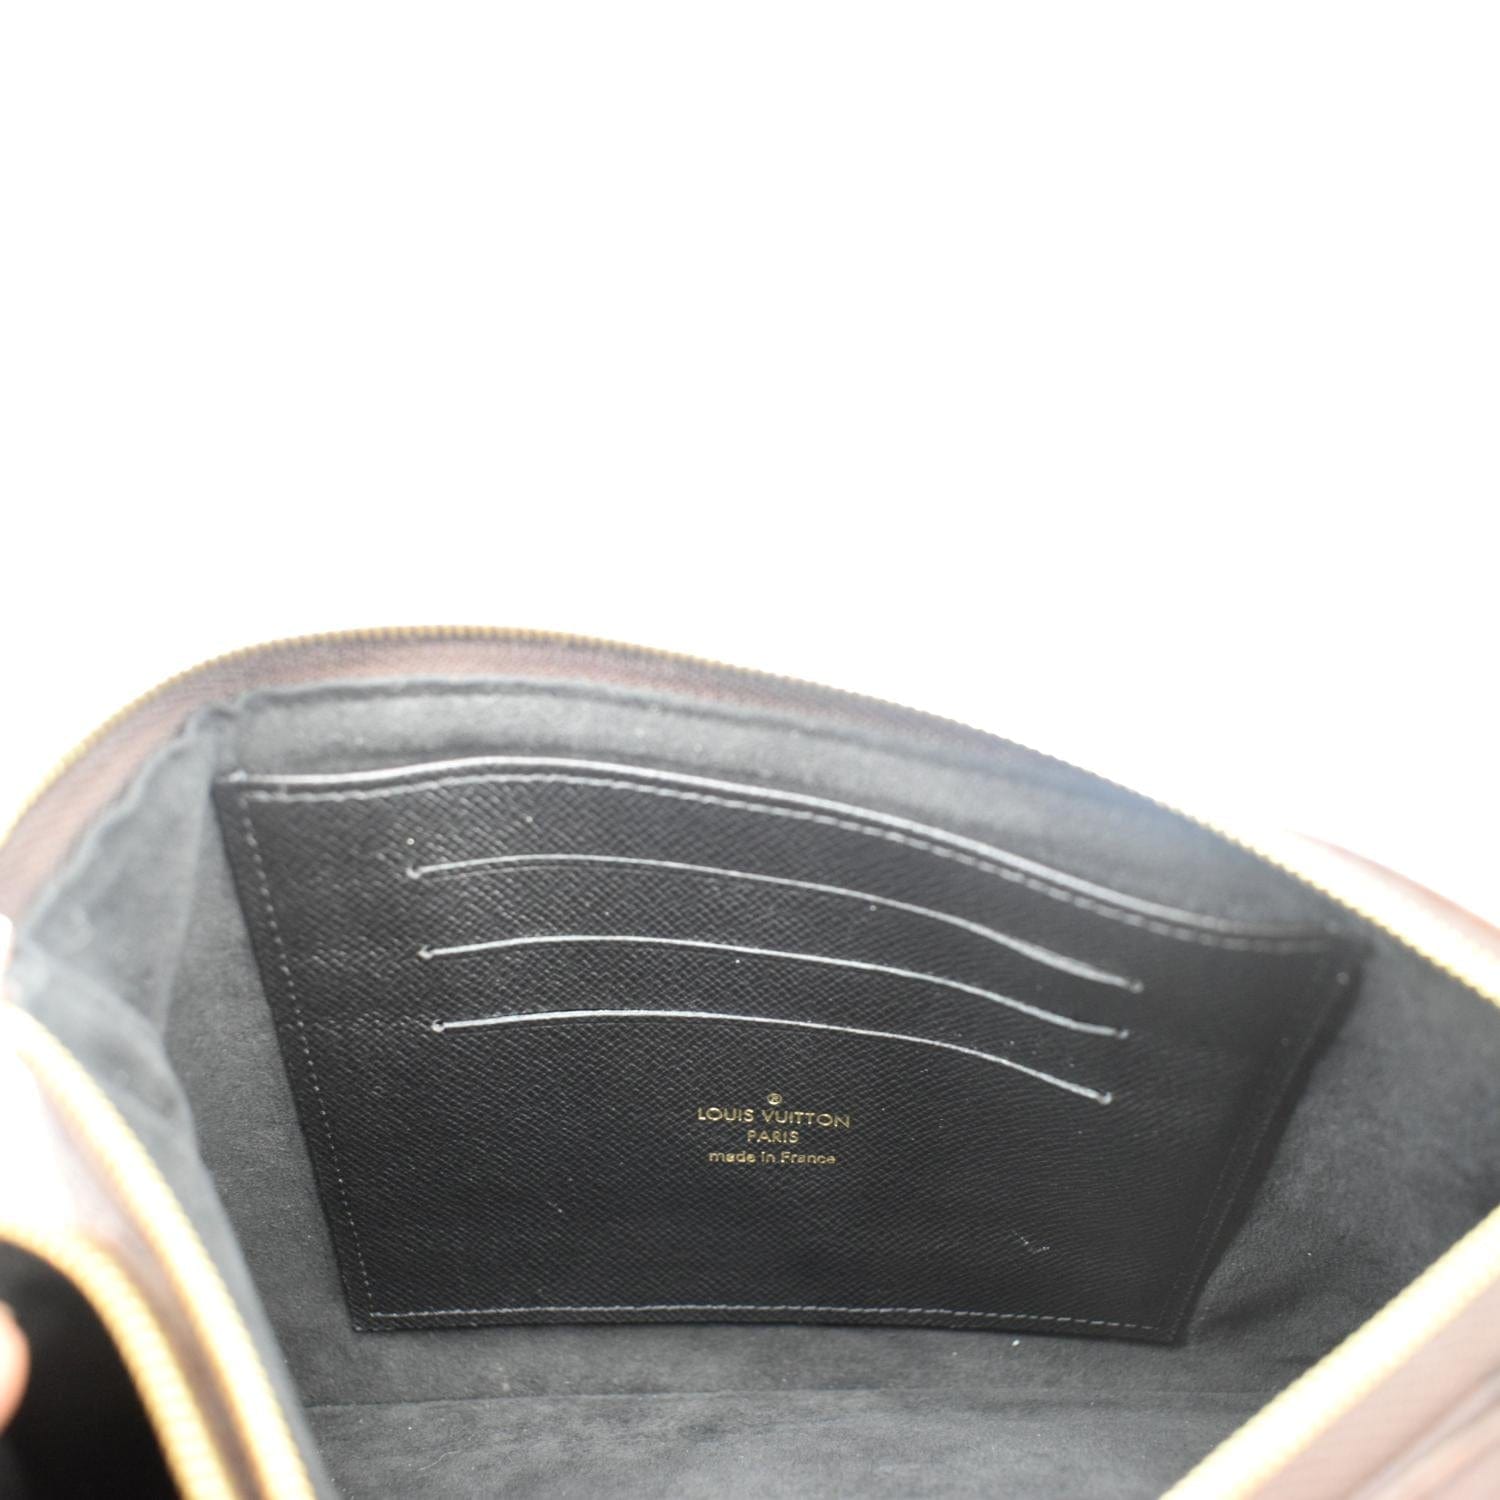 Shop Louis Vuitton MONOGRAM Double Zip Pochette (M69203) by Sincerity_m639